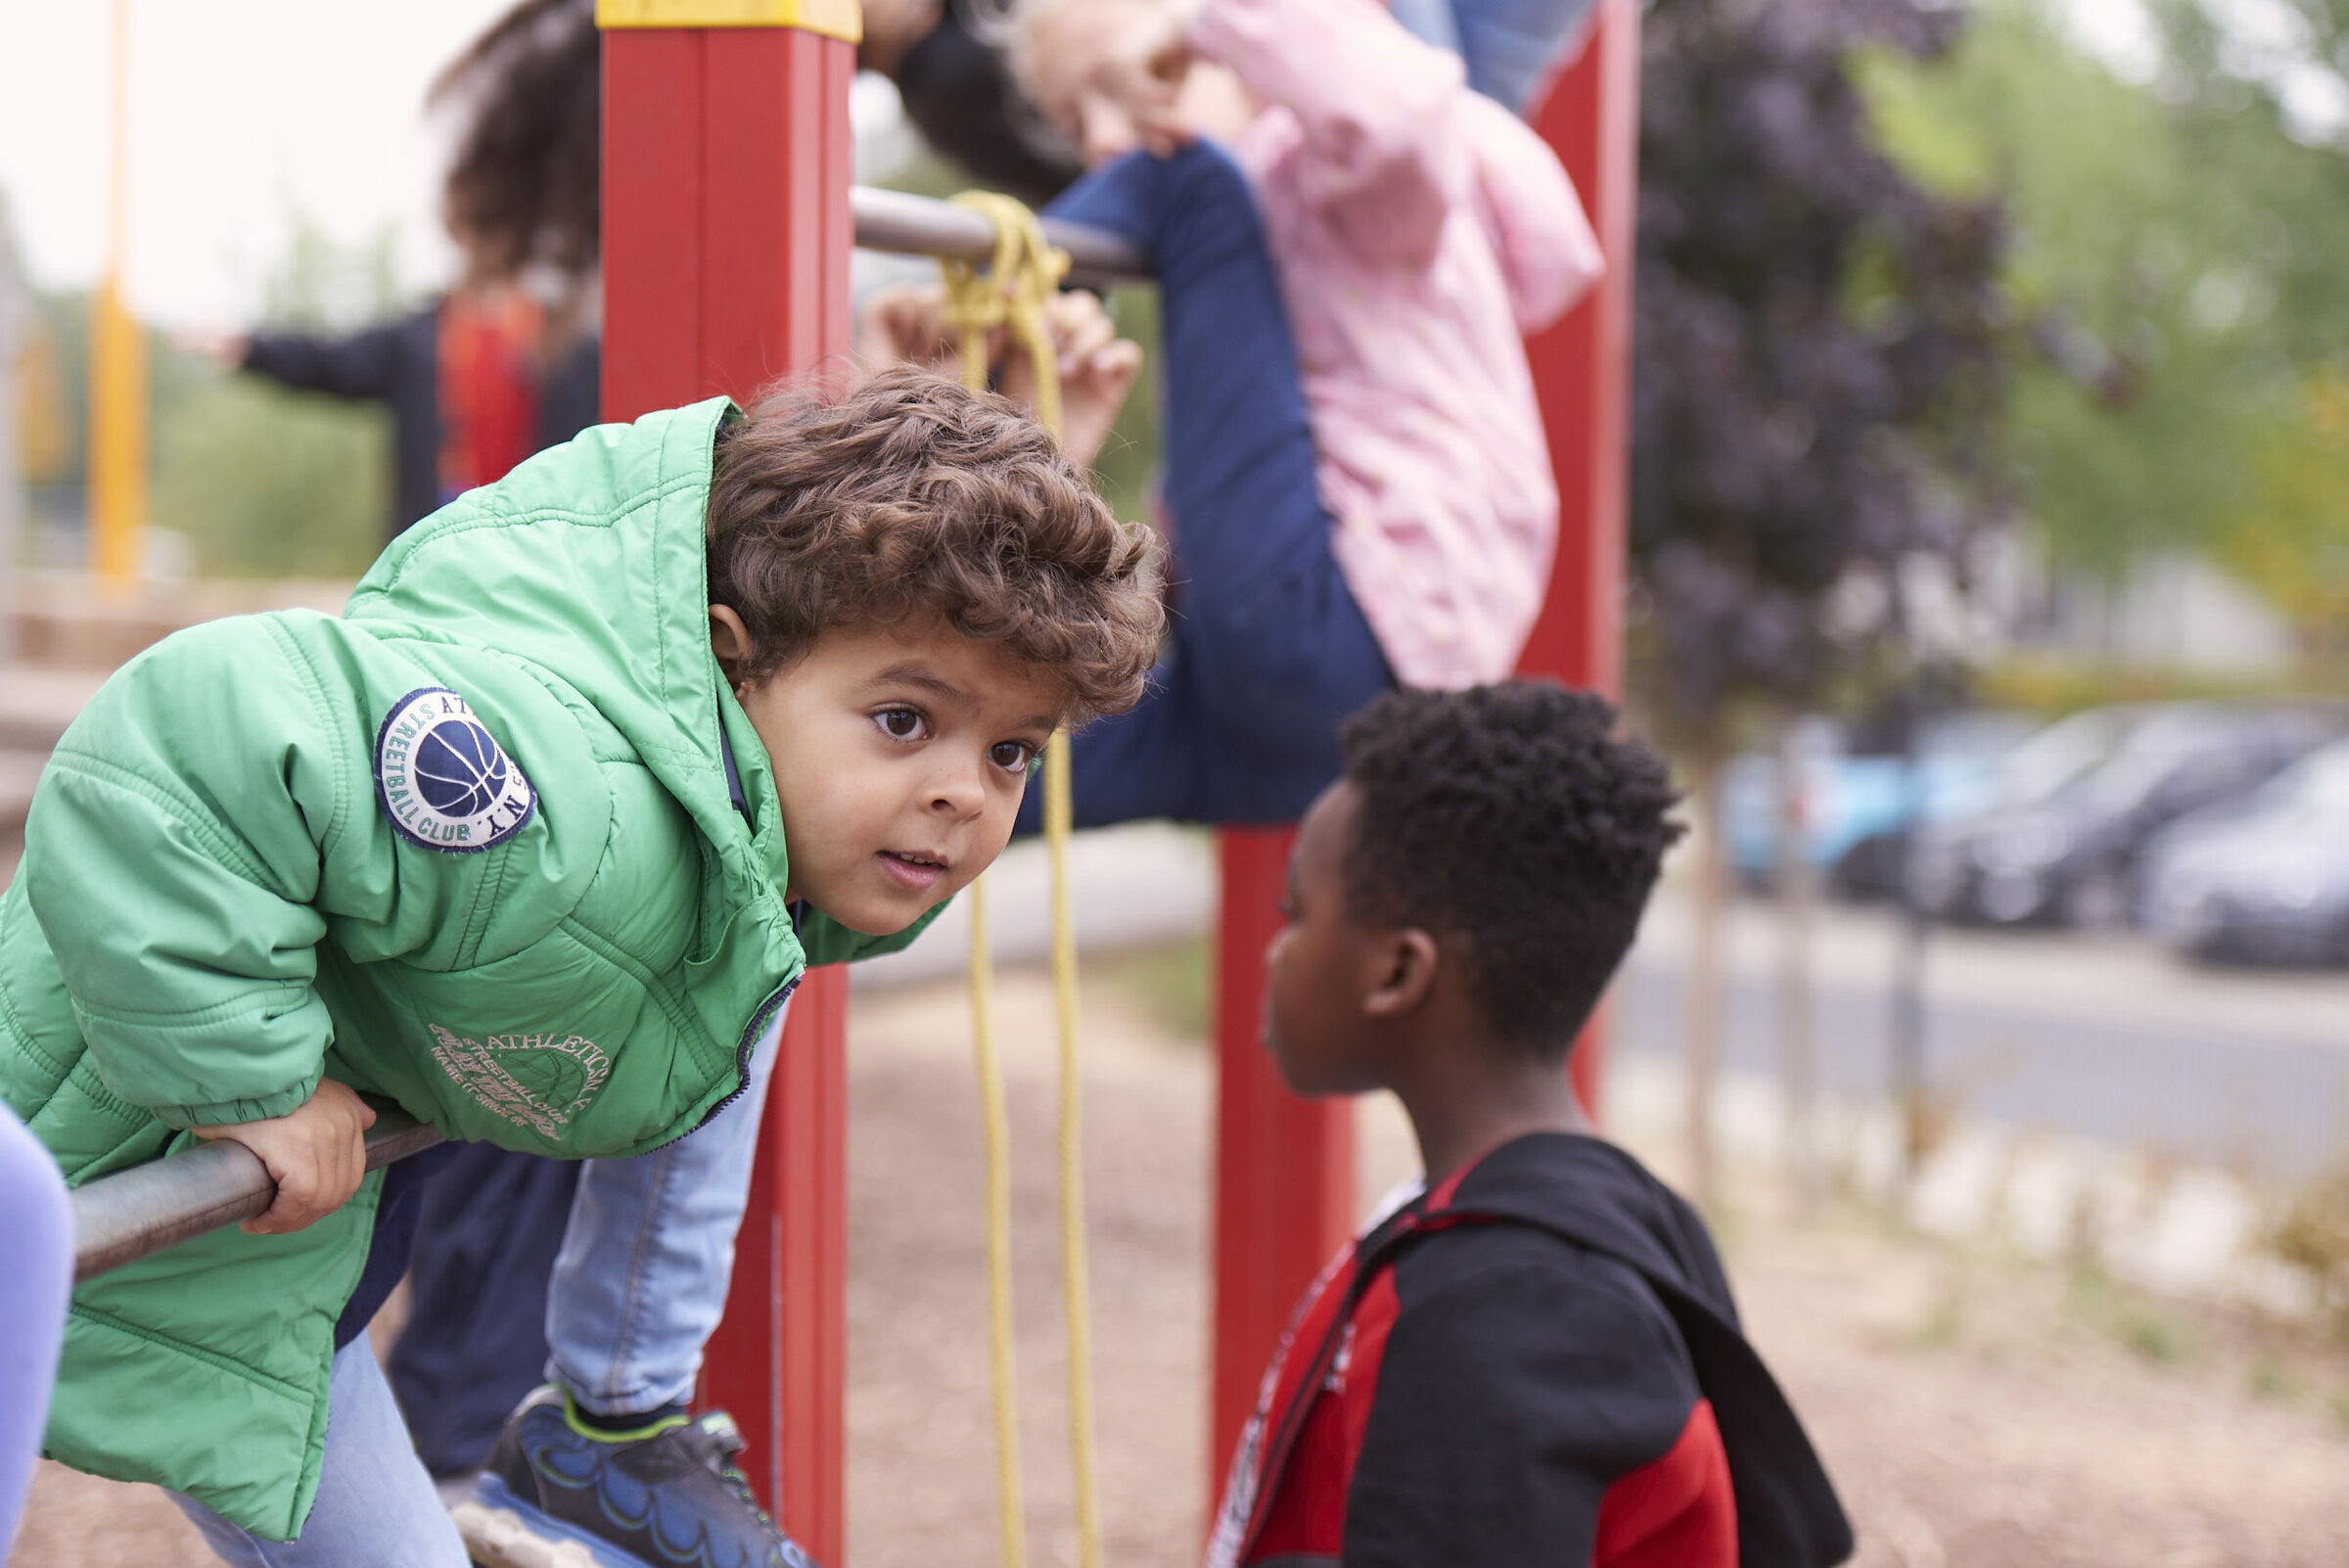 Kinder auf dem Spielplatz. Ein Junge stützt sich auf eine Reckstange.